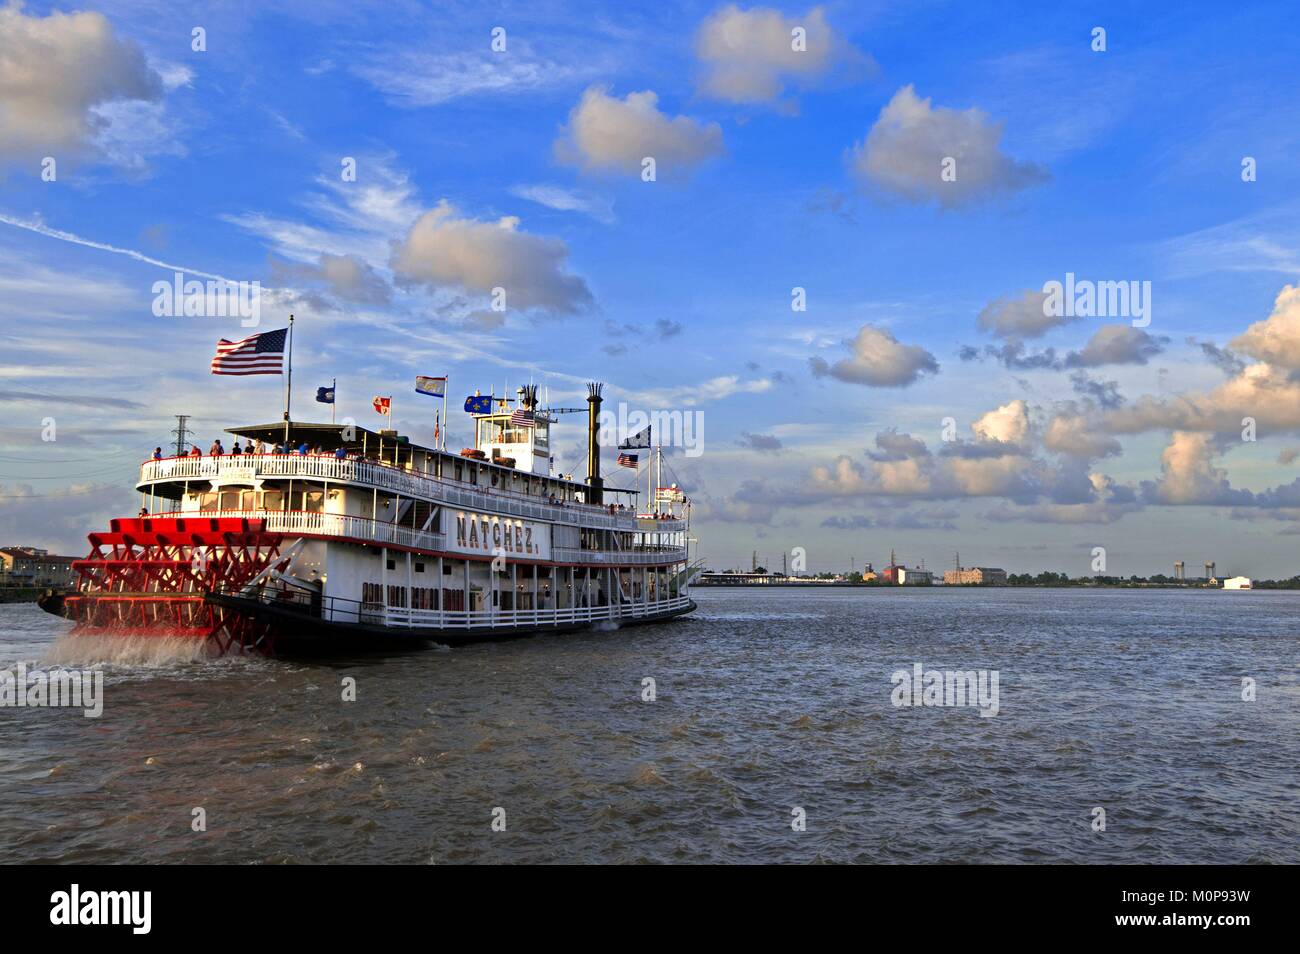 États-unis, Louisiane, Nouvelle Orléans, le steamboat Natchez sur le fleuve Mississippi Banque D'Images